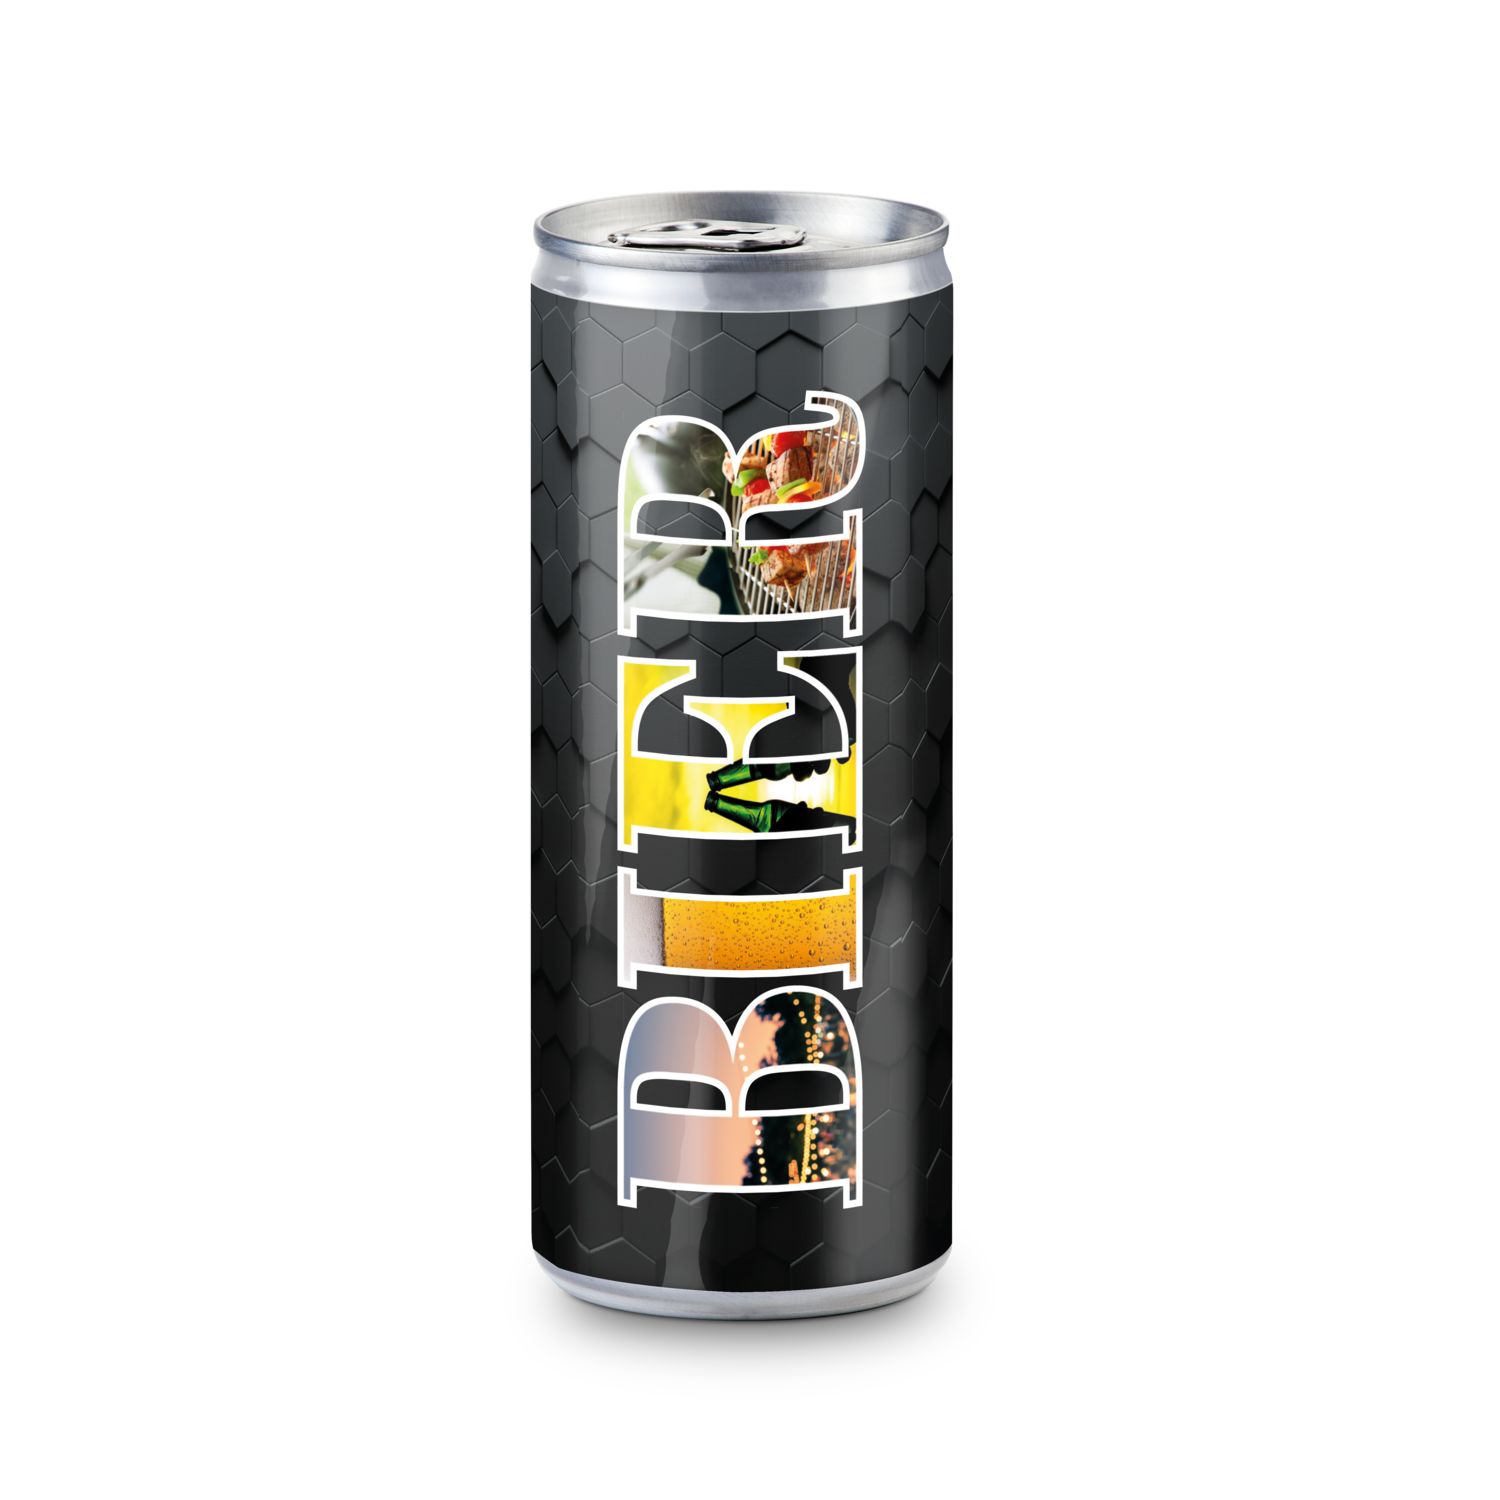 Helles Bier - feinherb und leicht malzig - Folien-Etikett, 250 ml 2P025C